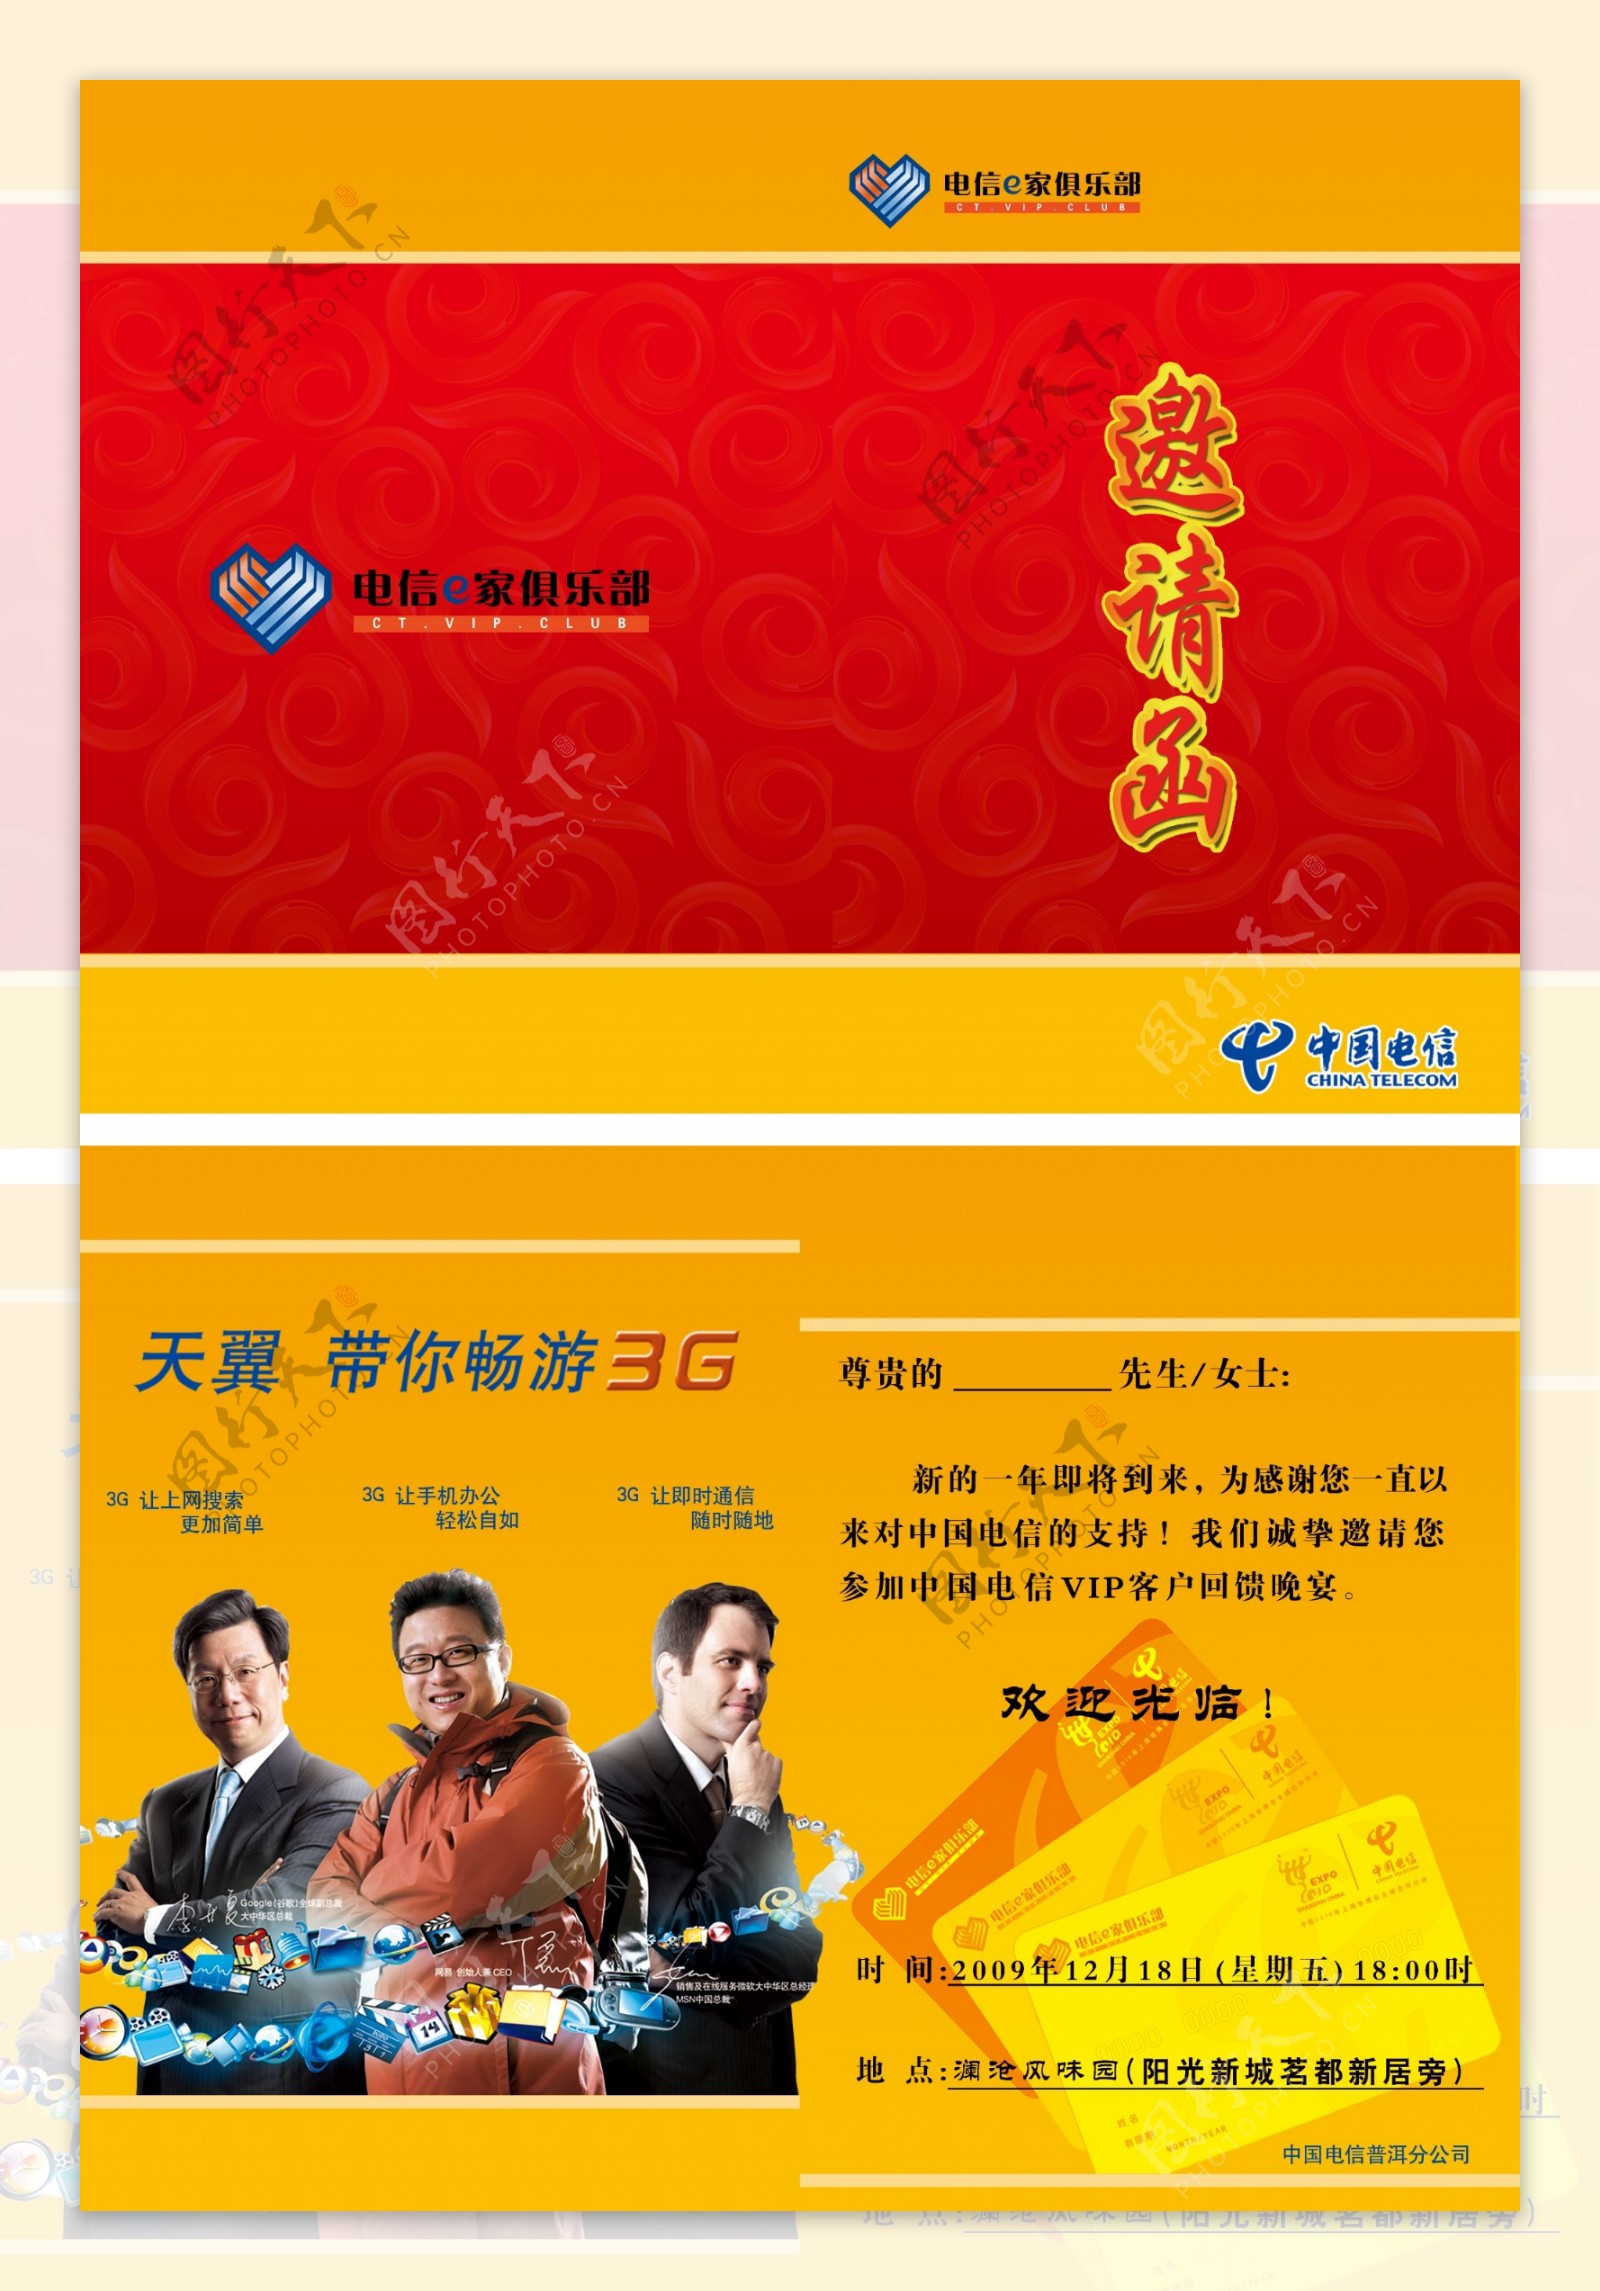 中国电信邀请函板式图片